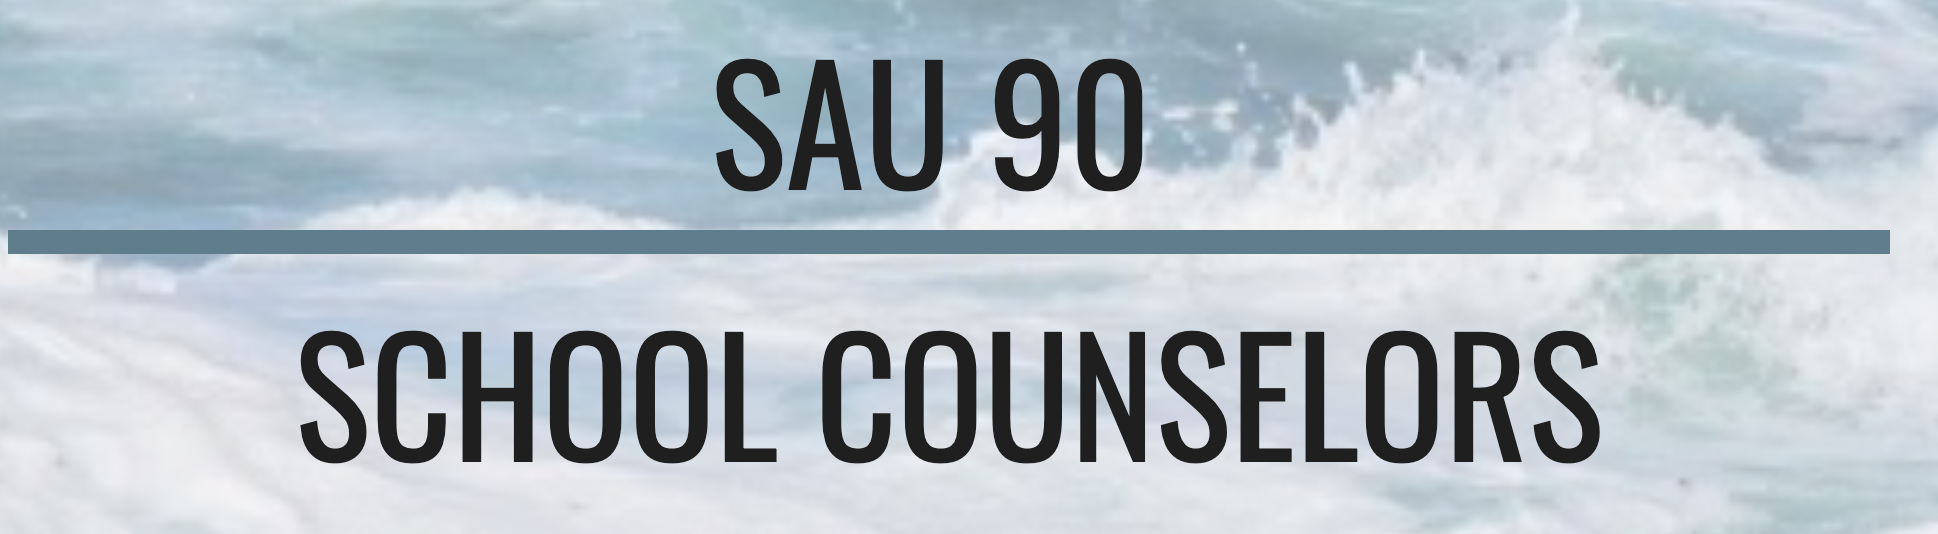 SAU 90 Counselor Website